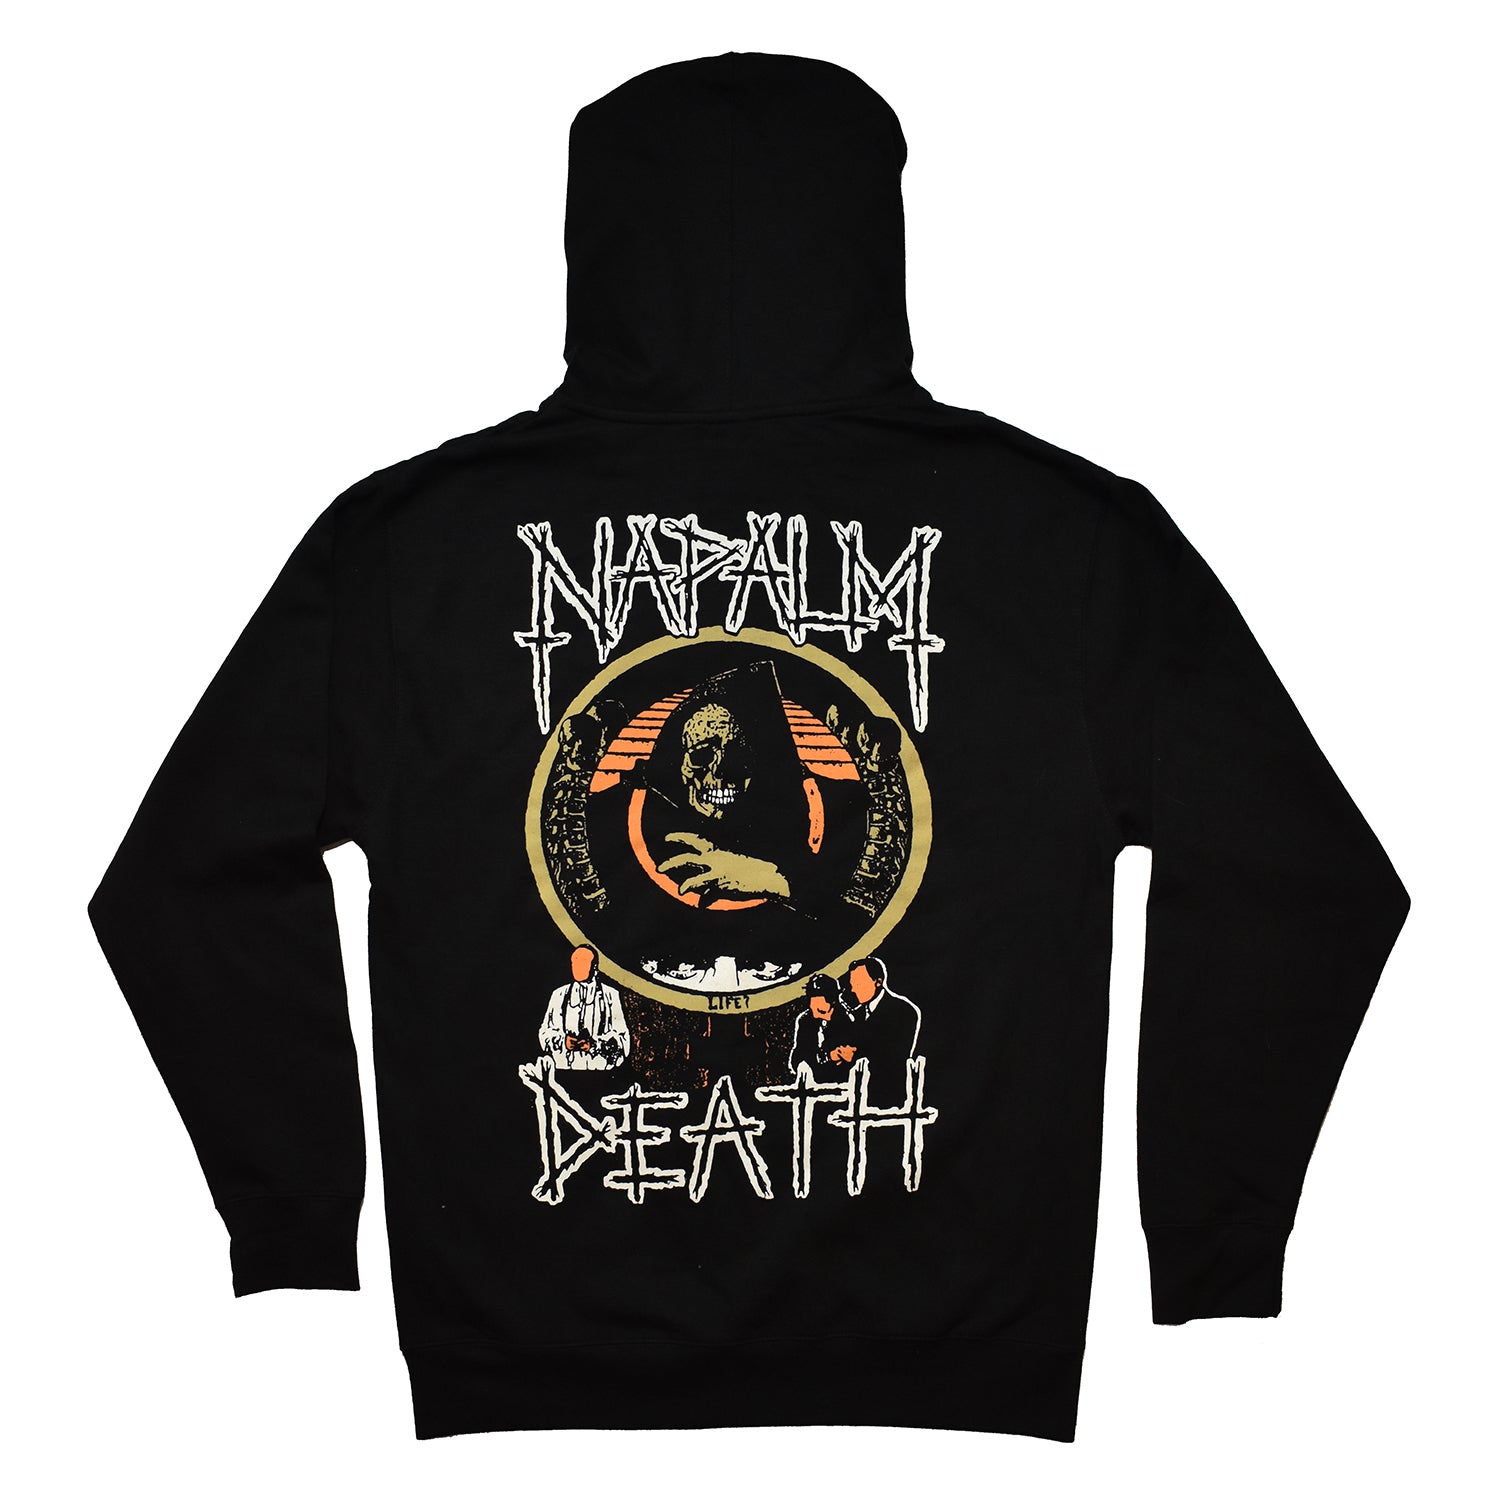 Napalm Death – Night Shift Merch